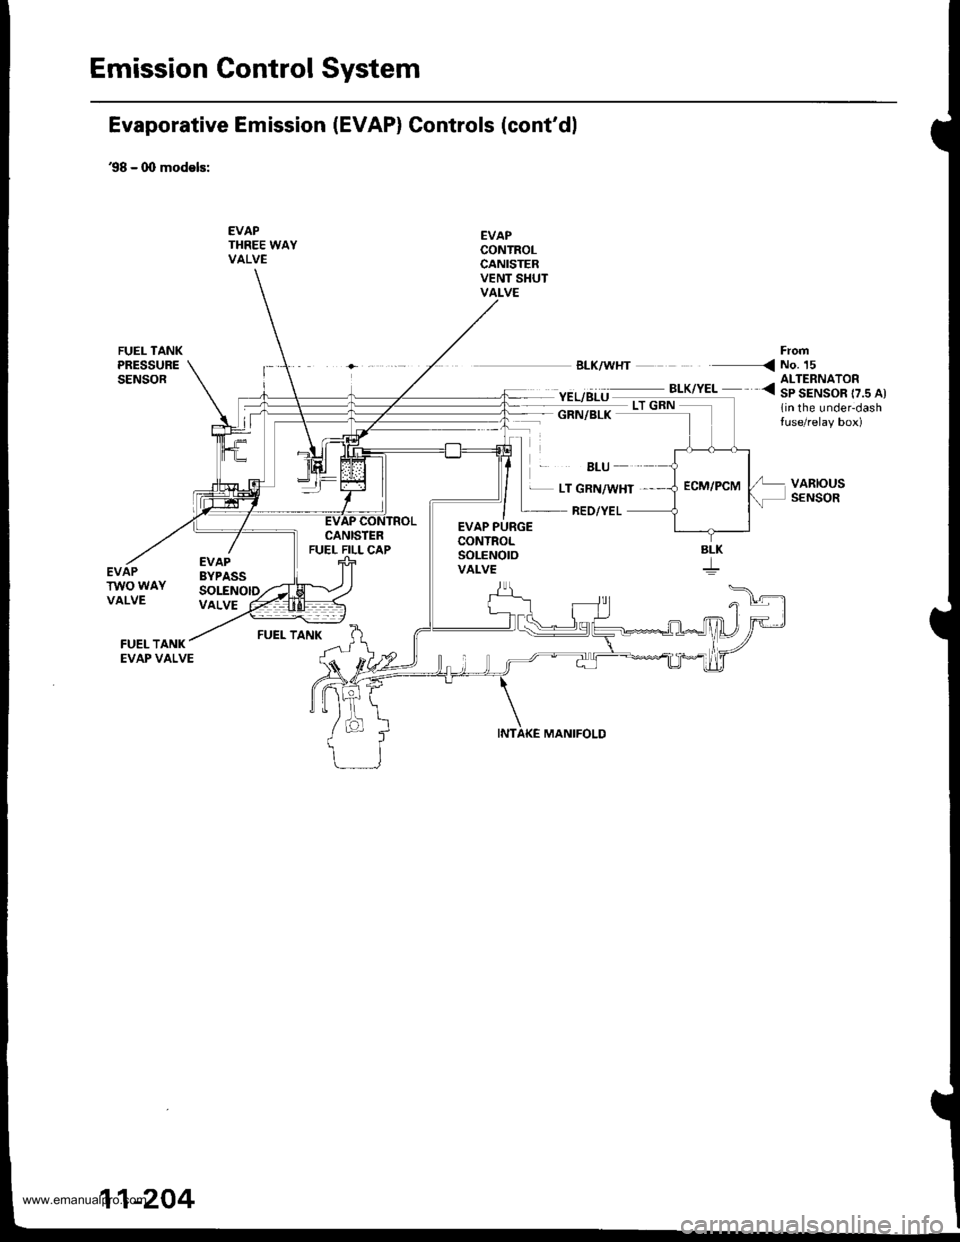 HONDA CR-V 1999 RD1-RD3 / 1.G User Guide 
Emission Gontrol System
Evaporative Emission (EVAP) Controls (contdl
98 - 0O models:
EVAPTHREE WAYVALVE
EVAPCONTROLCANISTERVENT SHUTVALVE
EL/BLU ._^_-:.*,".. <3|ltAIS"o[..^,
1in the under-dashtuse